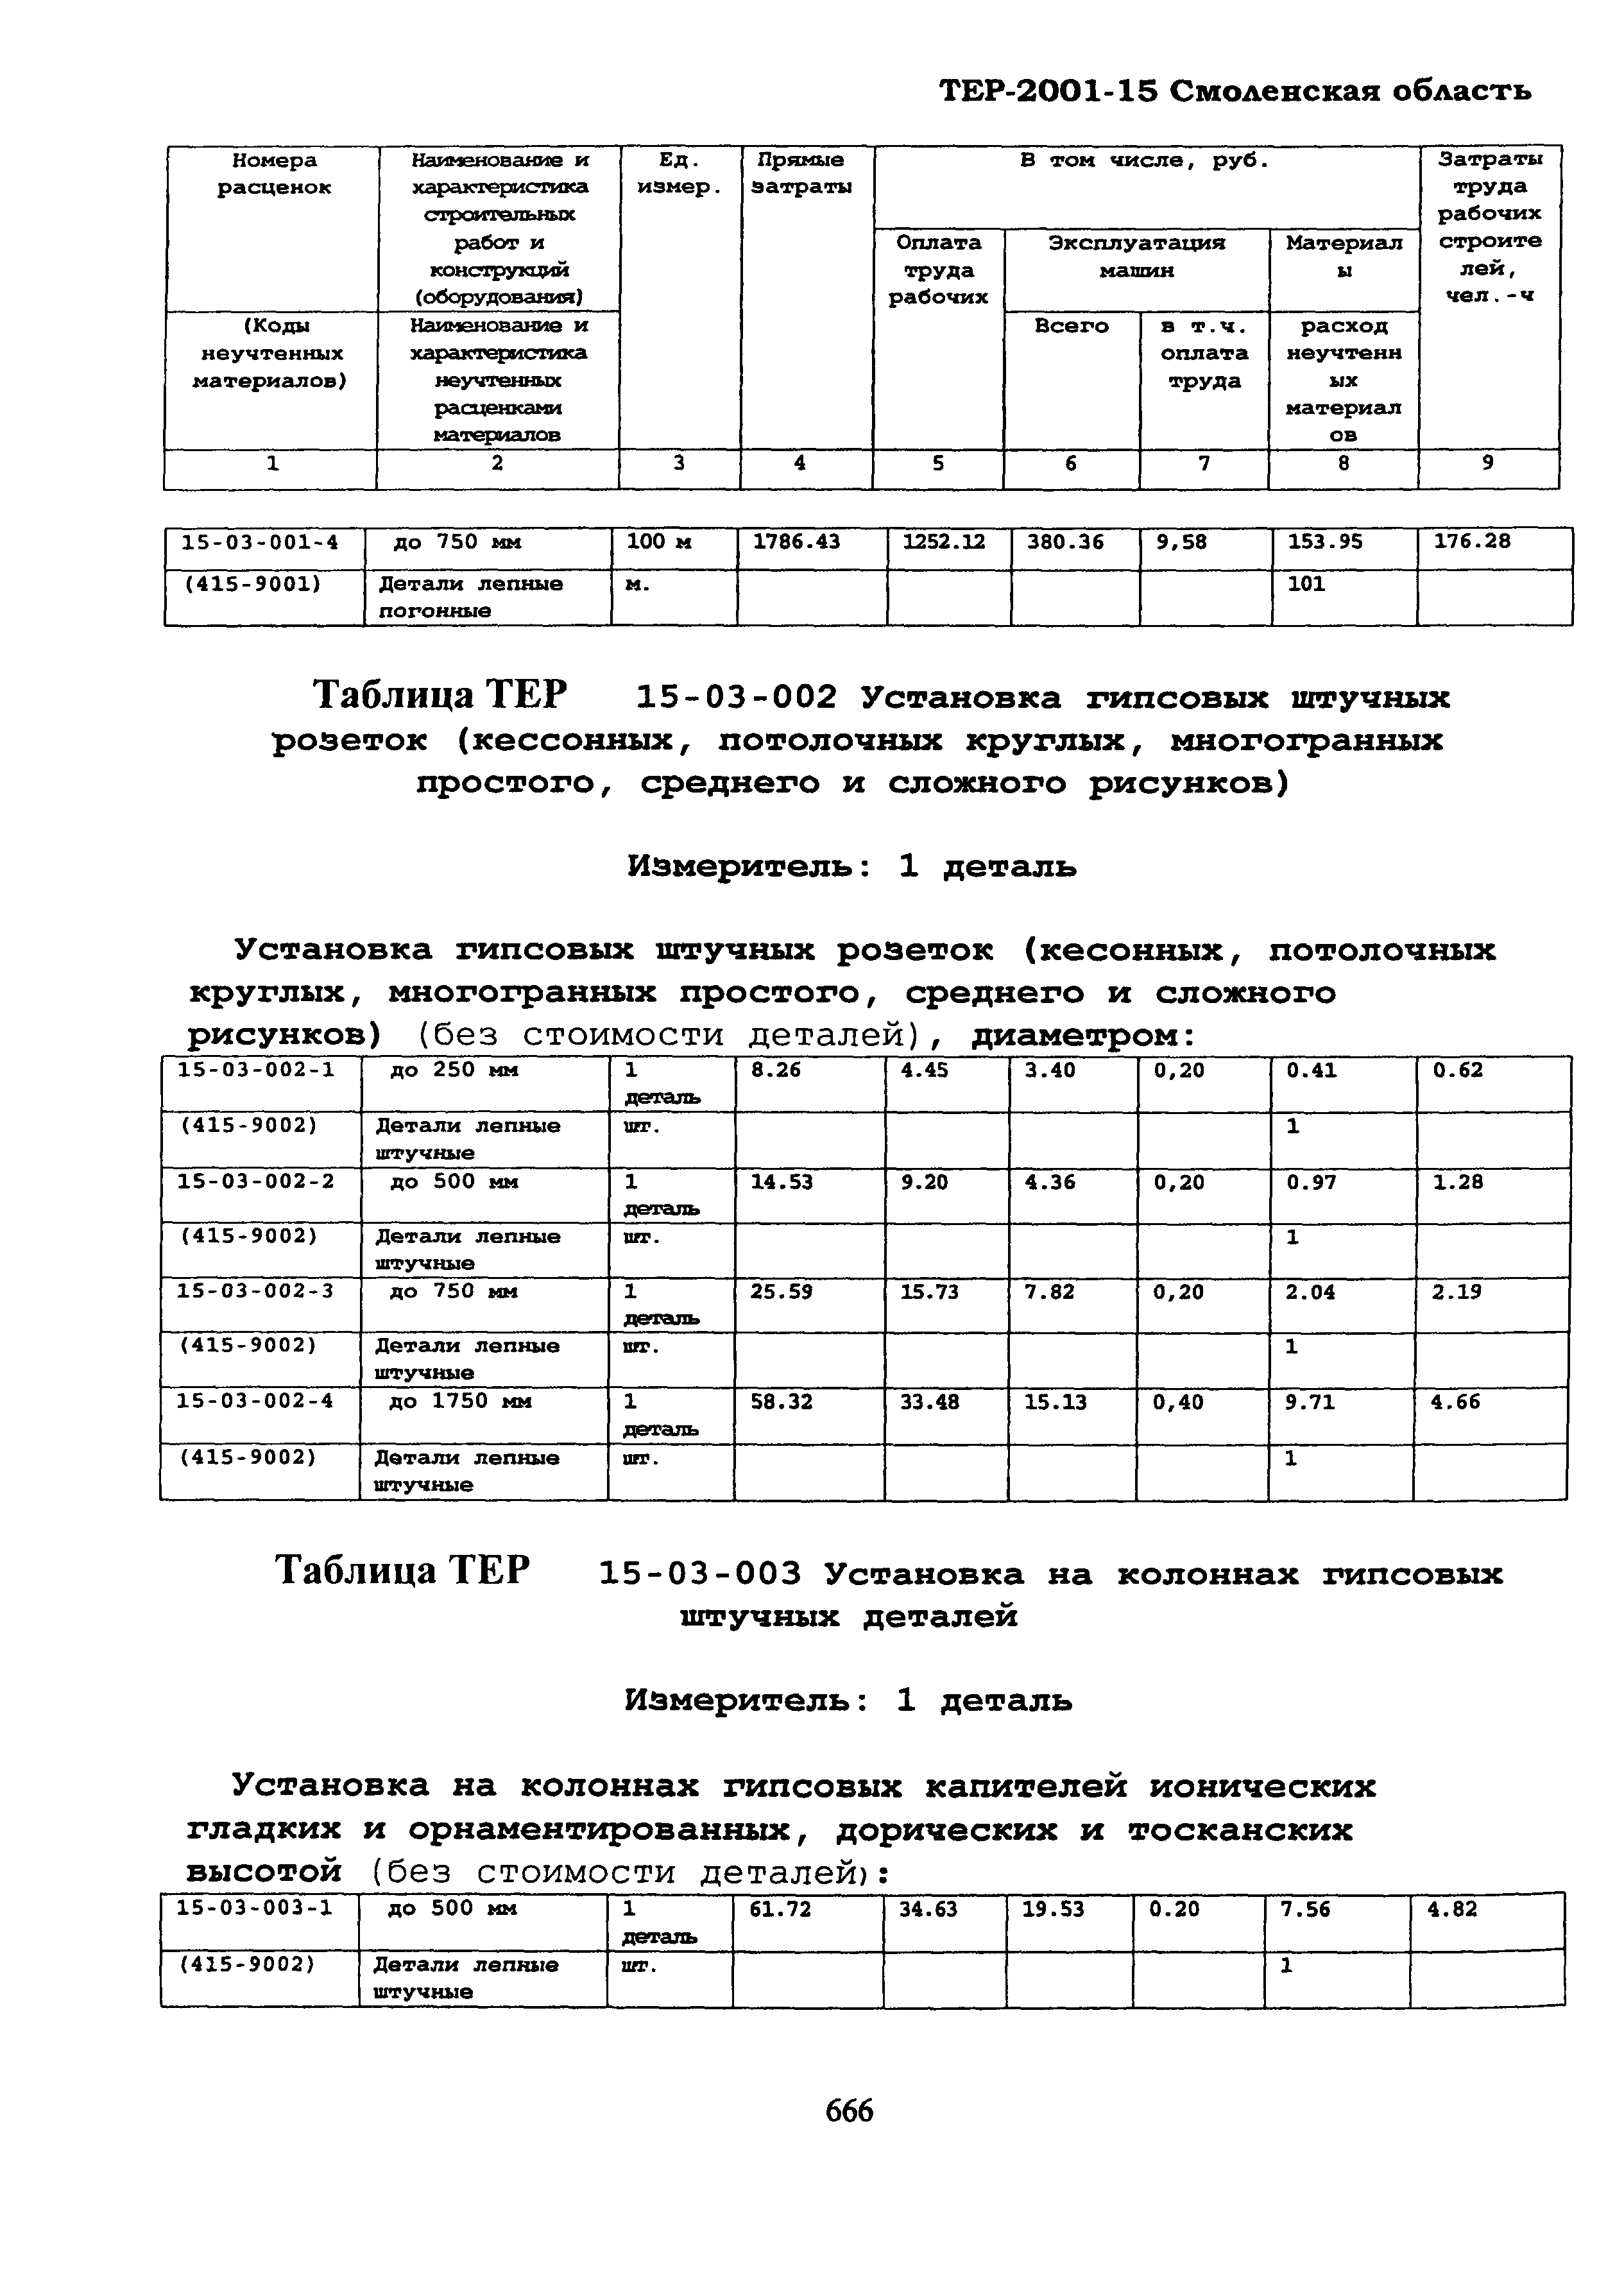 ТЕР Смоленская область 2001-15